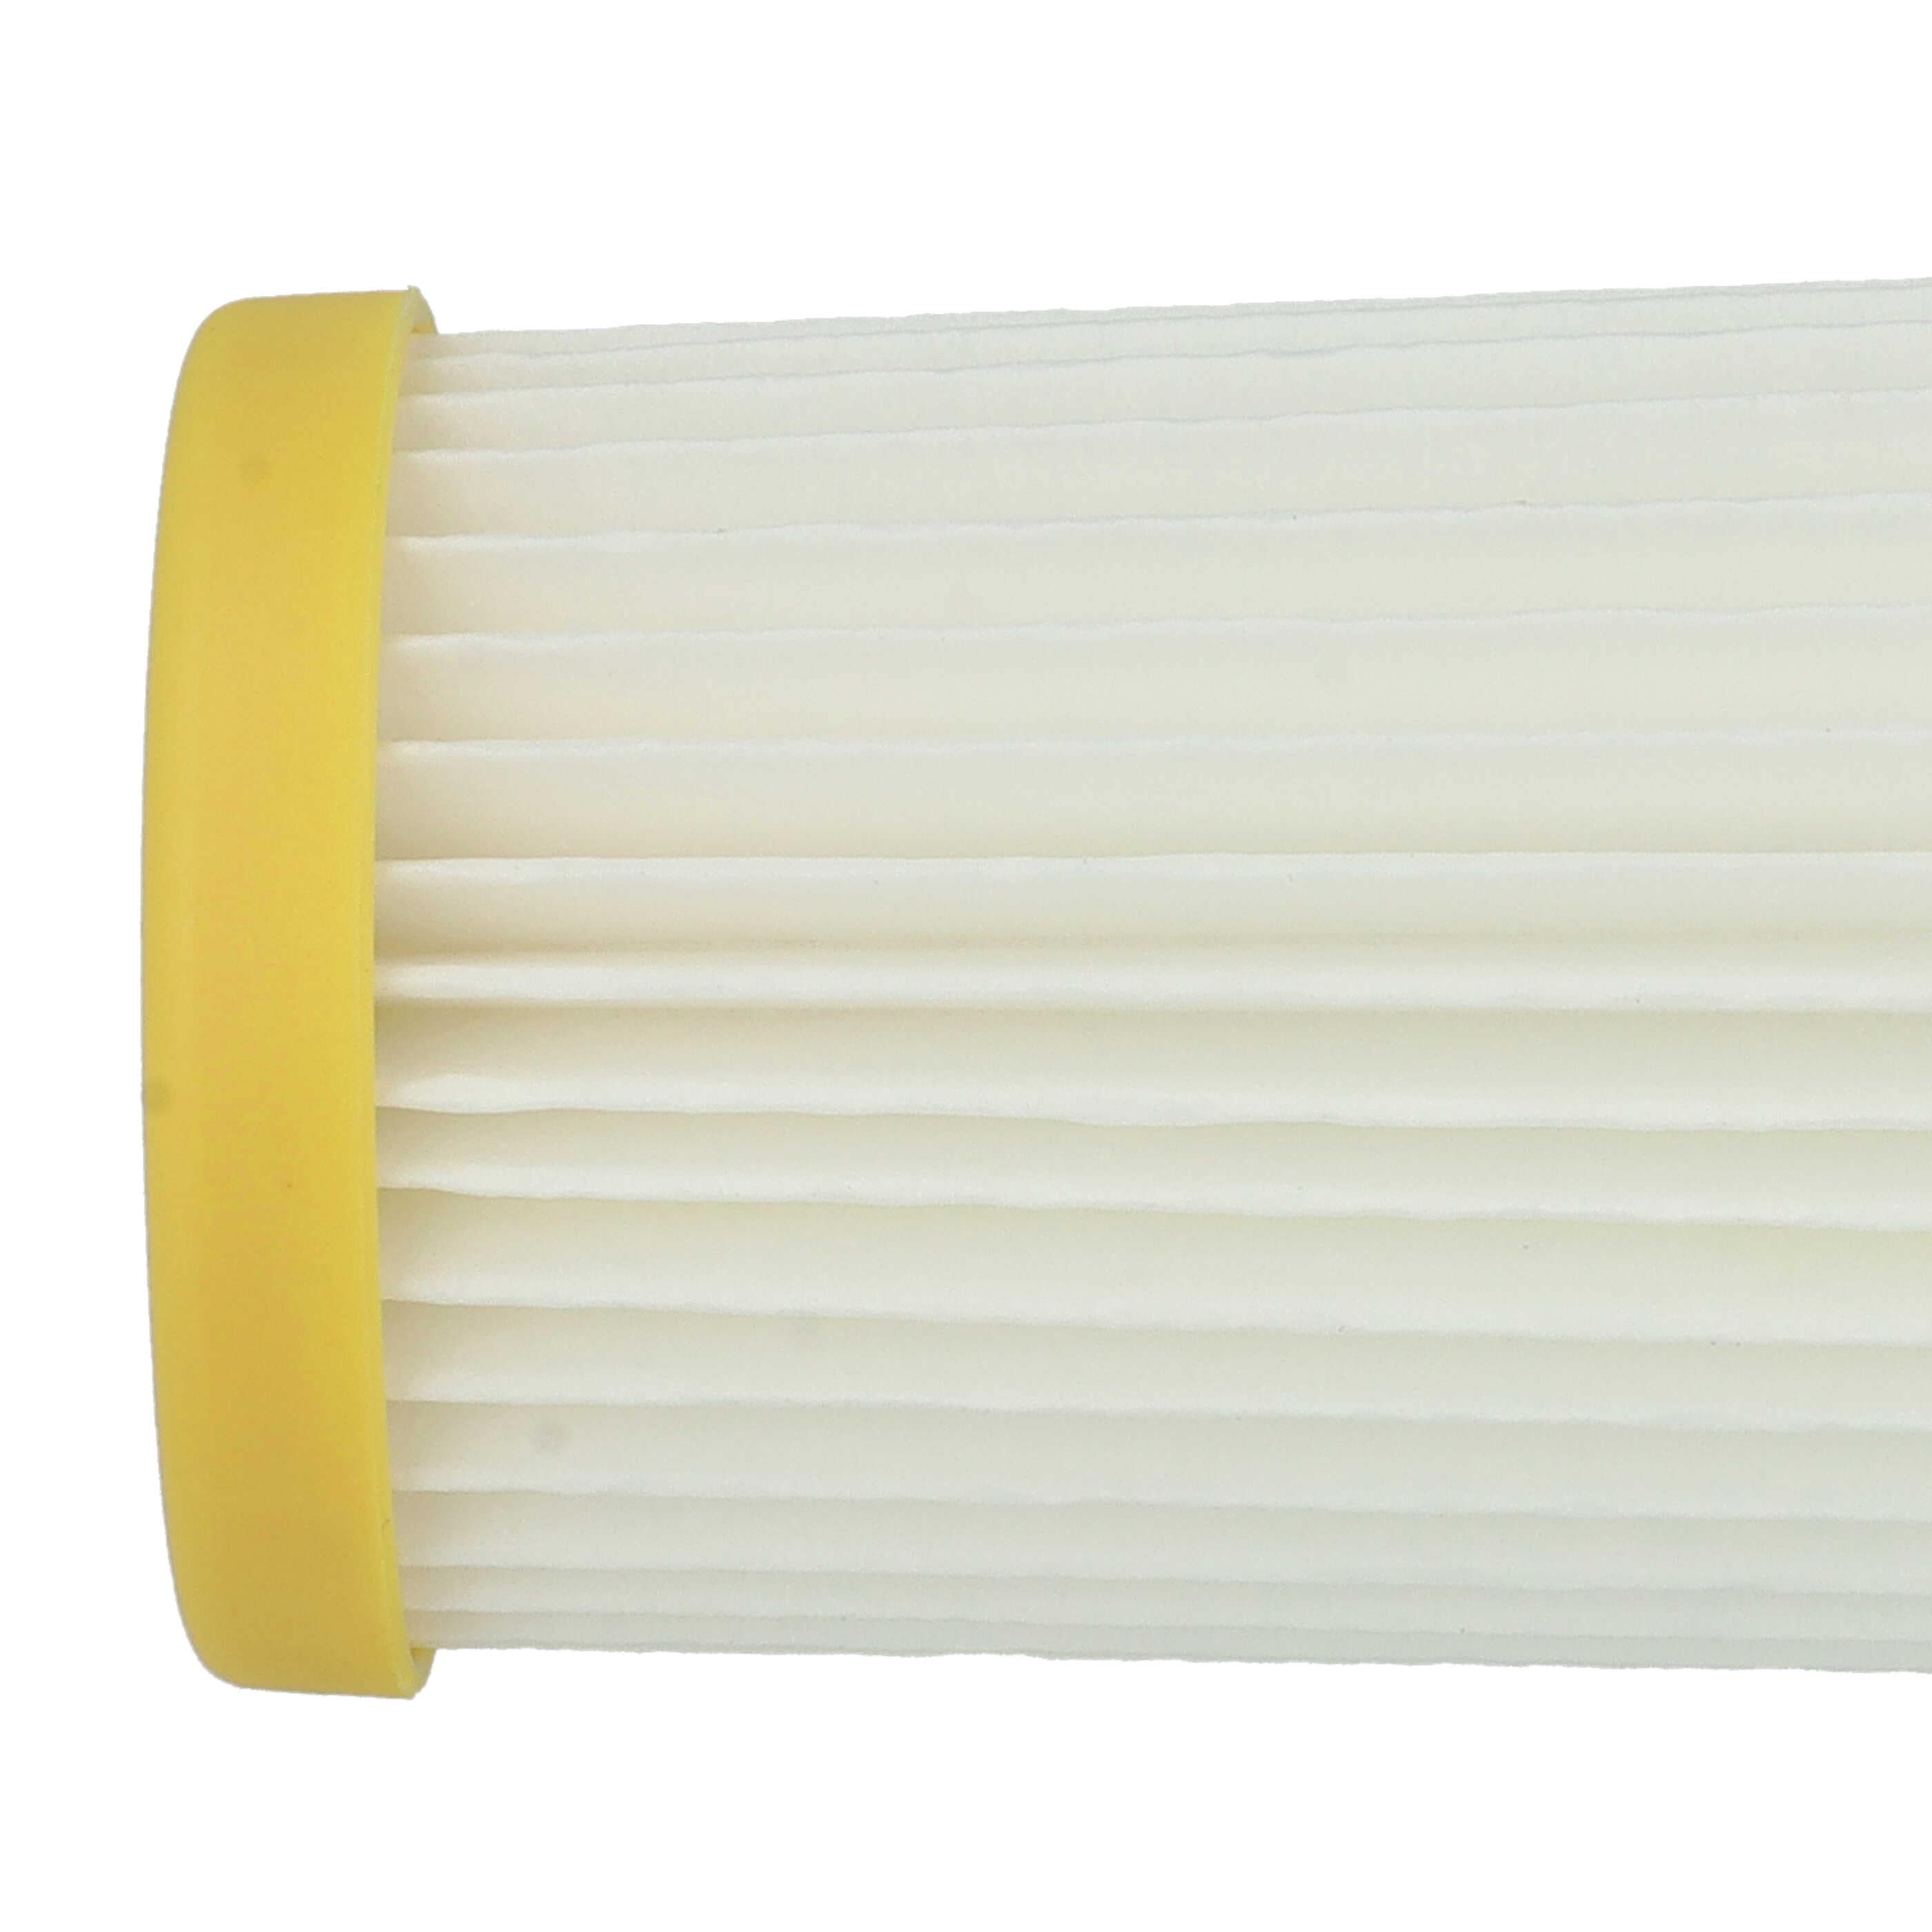 Filtro reemplaza Philips 432200520850 para aspiradora filtro de cartucho, blanco / amarillo